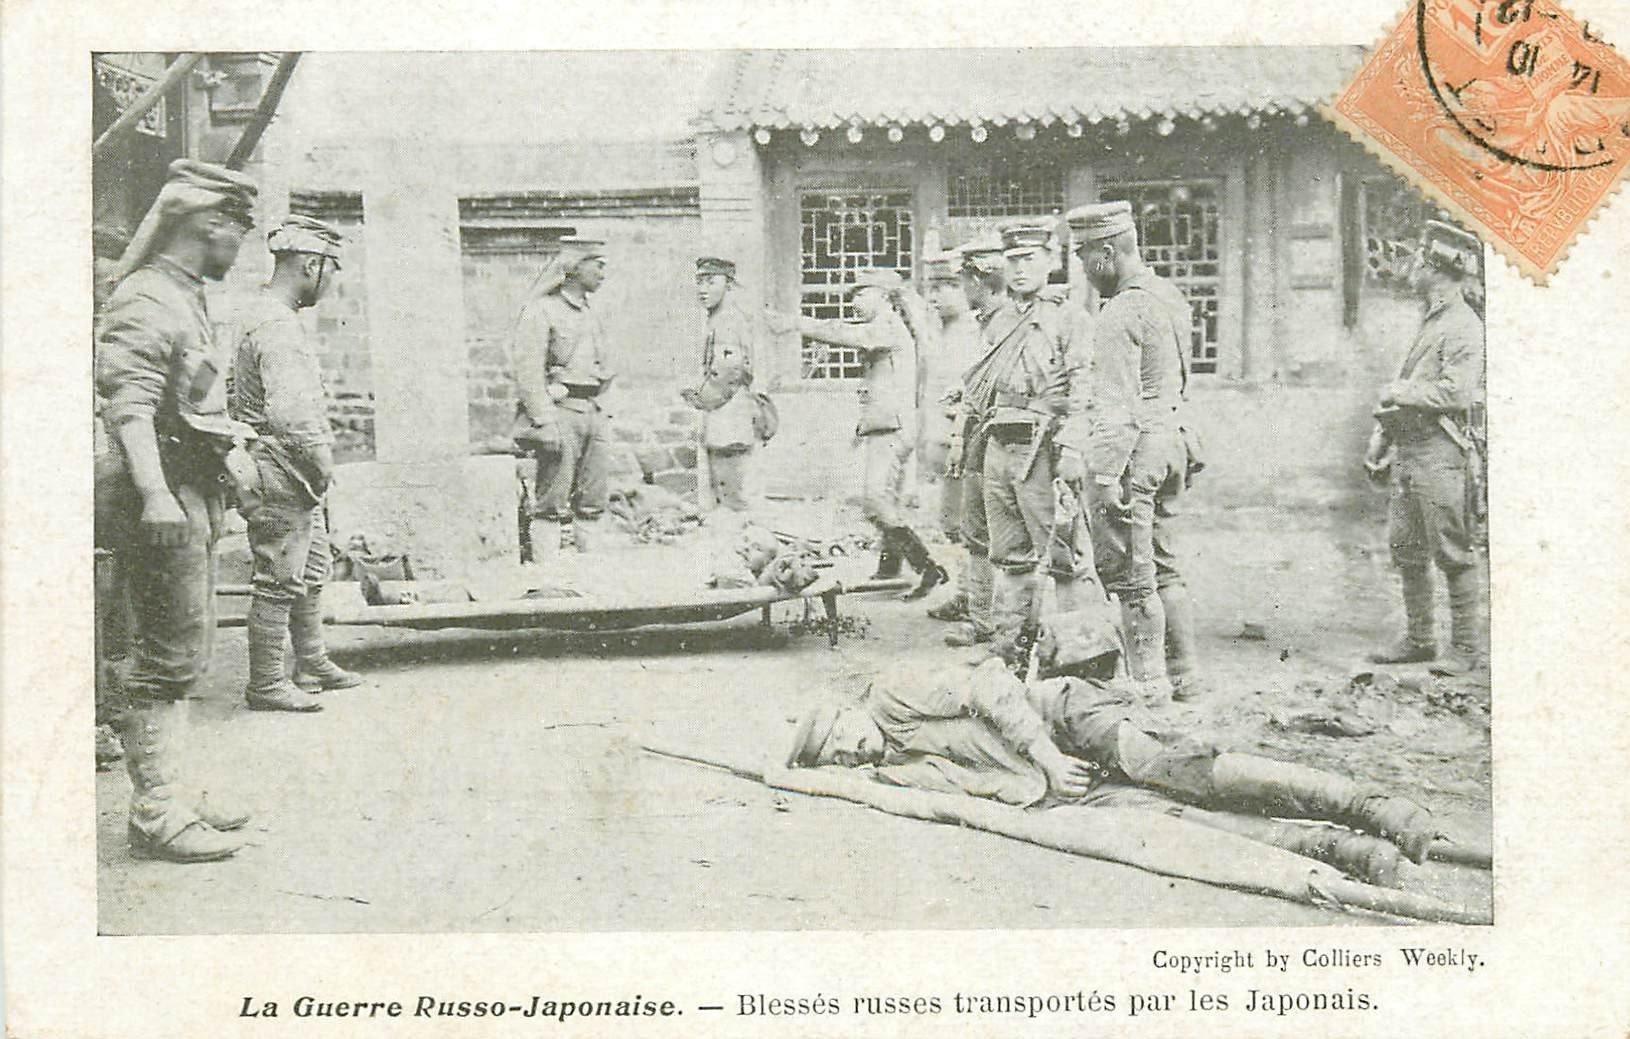 MILITAIRES. La Guerre Russo-Japonaise. Blessés russes transportés par des japonais vers 1904...